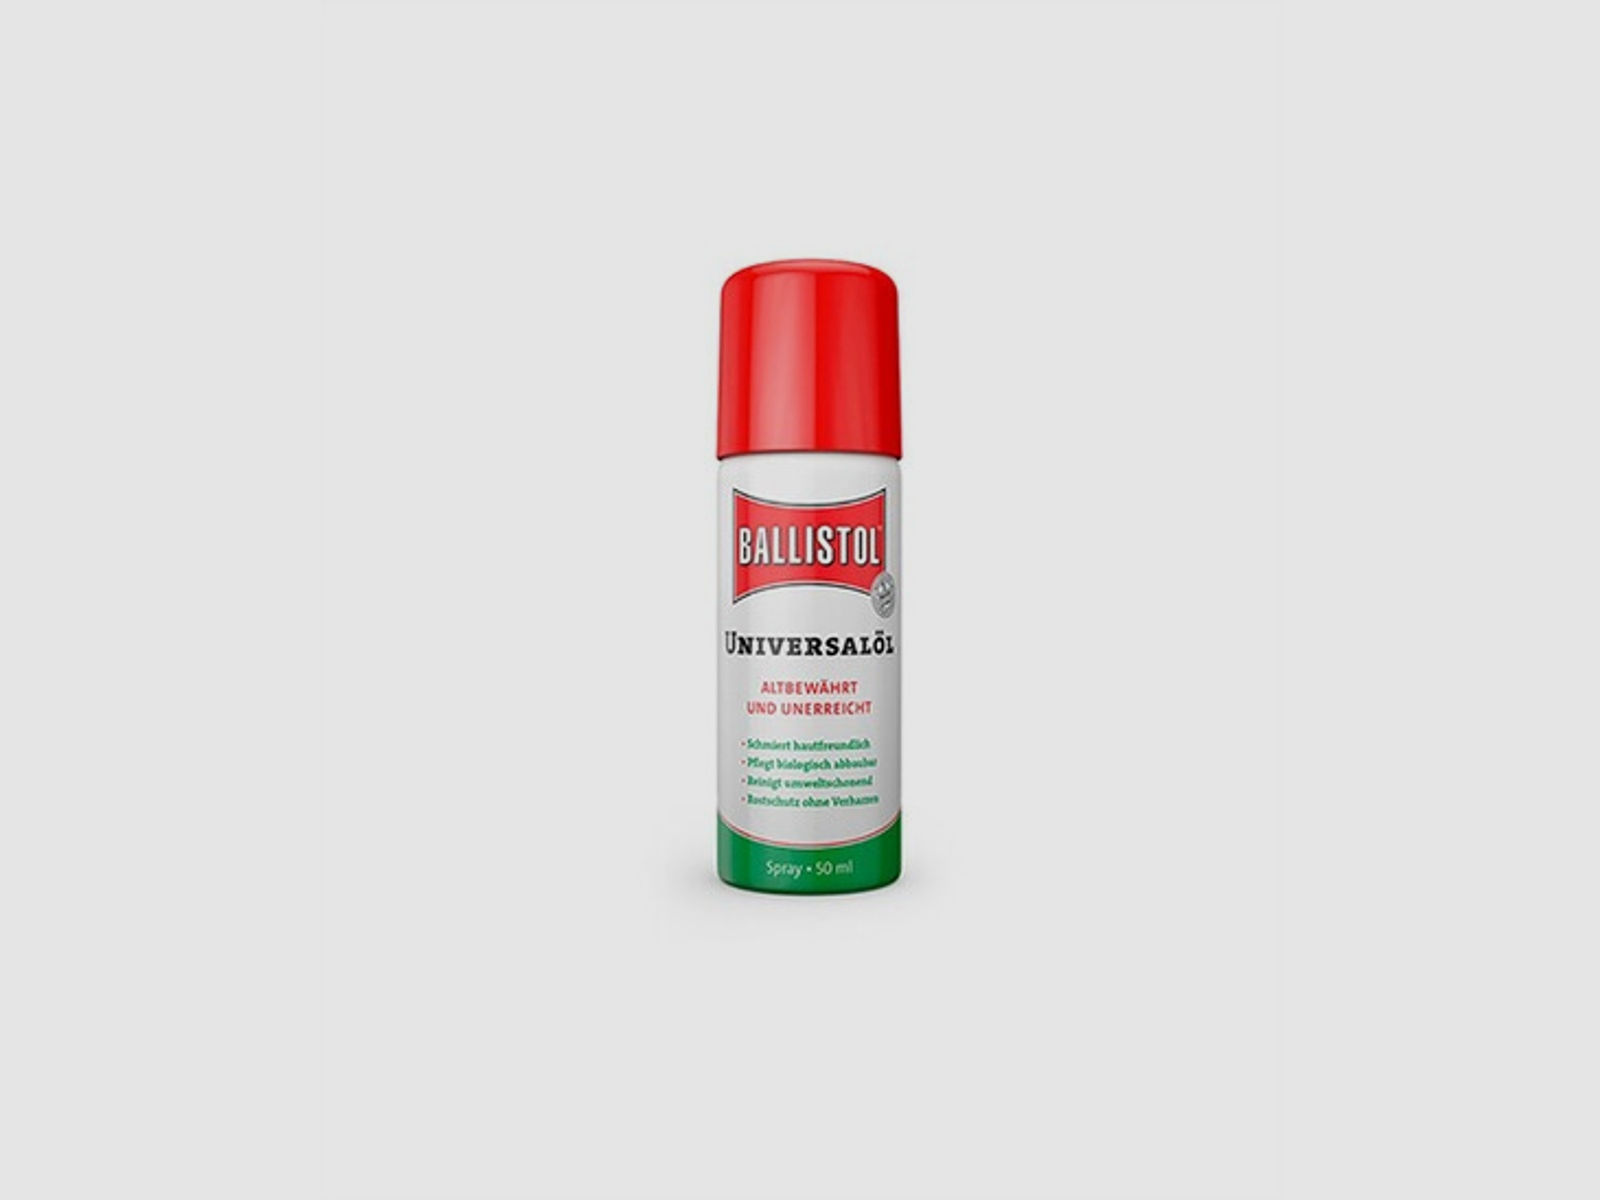 Ballistol ® Universalöl - Spray 50ml - Der Klassiker zur Pflege von Holz, Leder und Metall